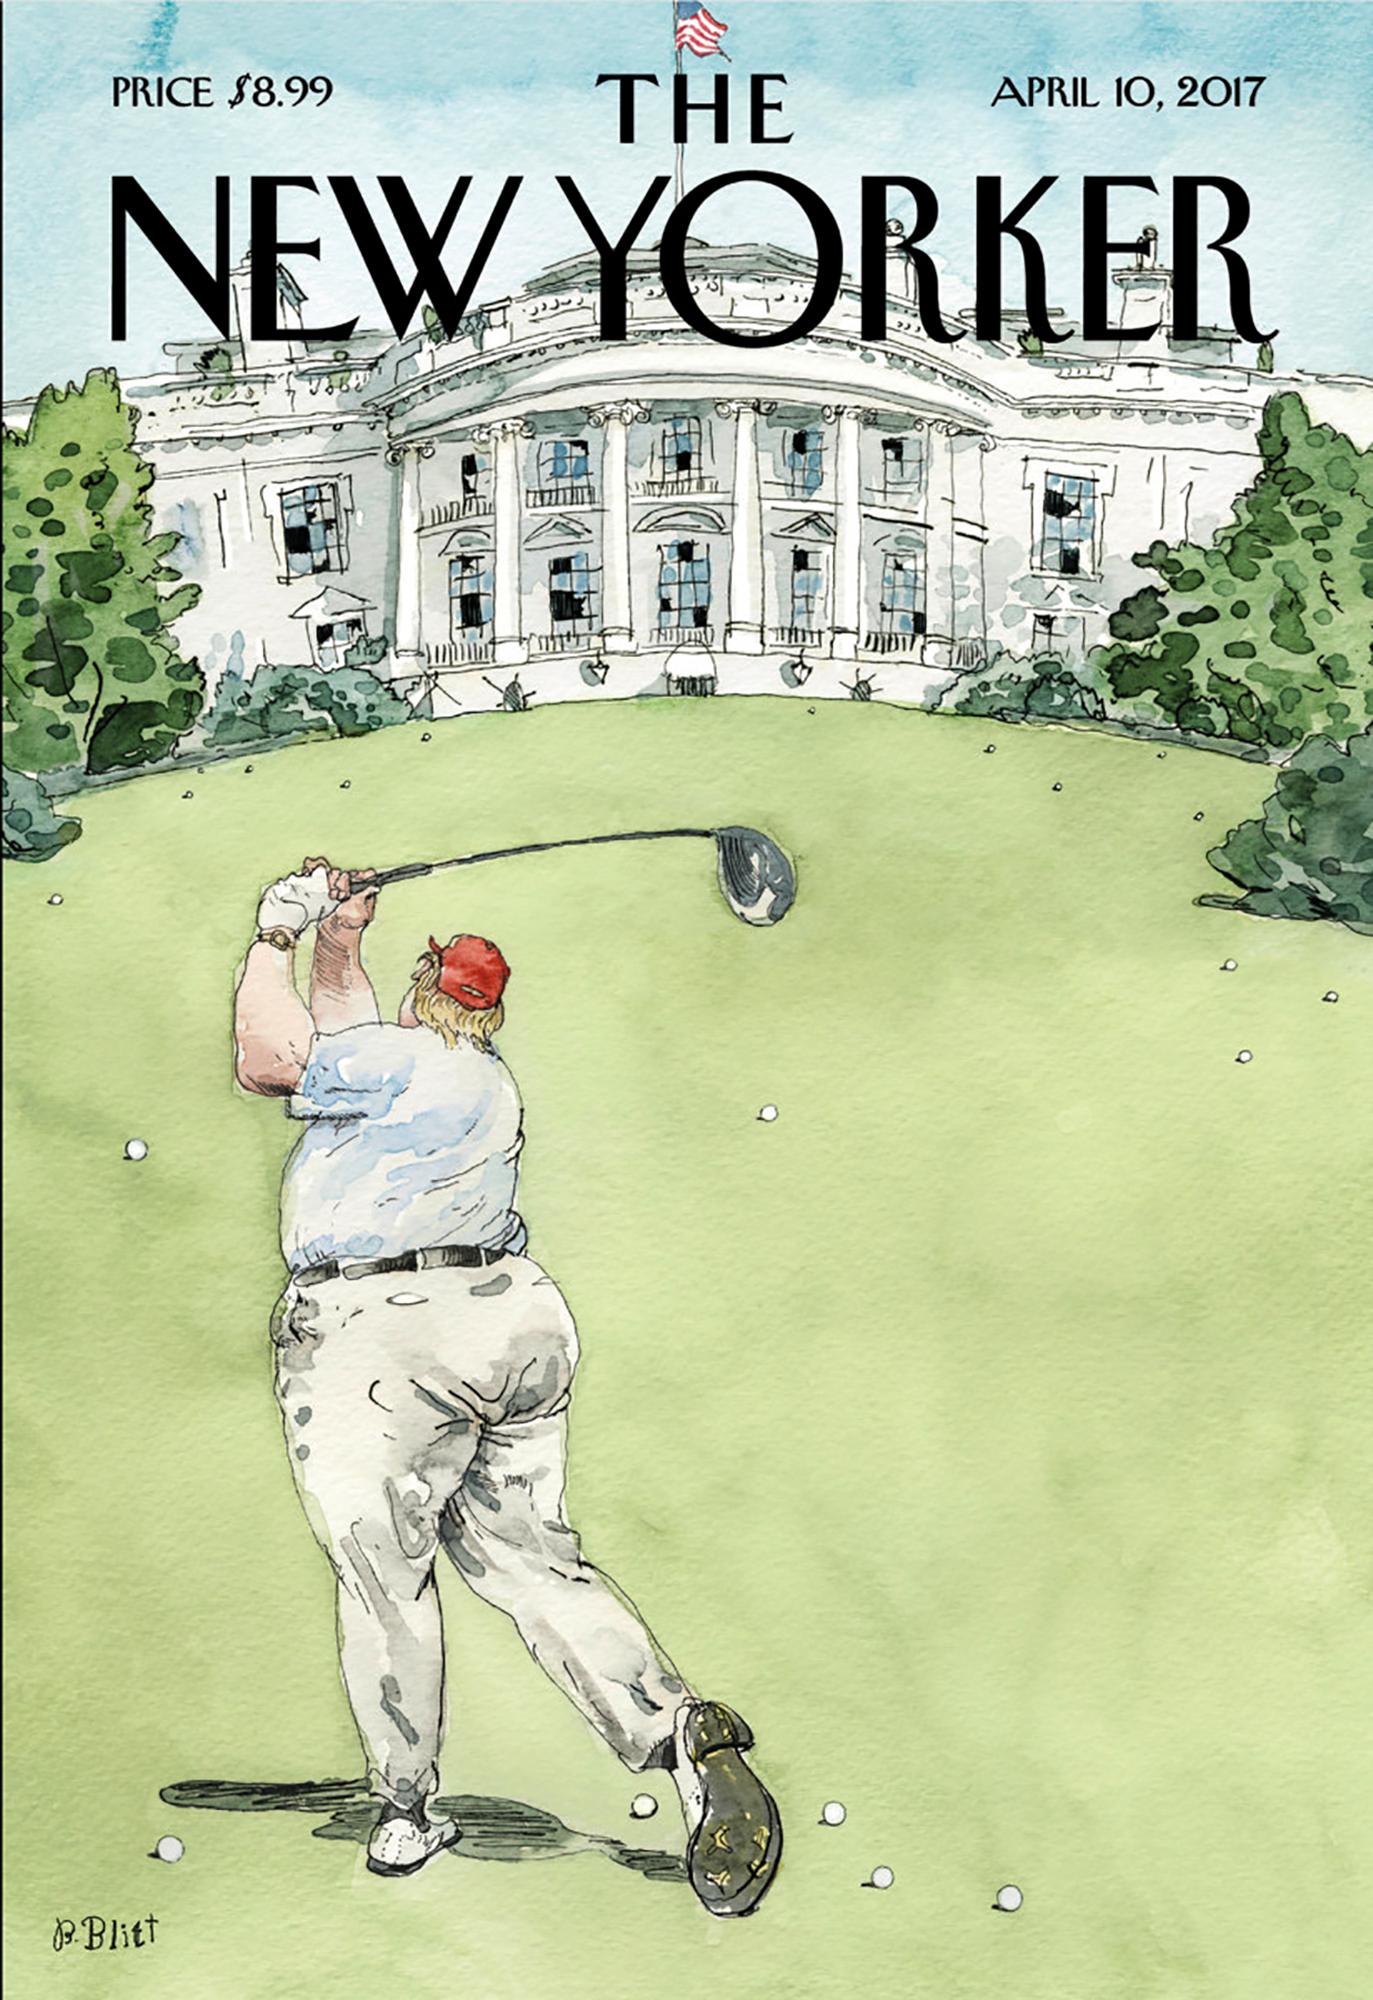 Portada de la revista tras la llegada de Trump a la Casa Blanca. Según el autor representa su inexperiencia en el manejo de la política.